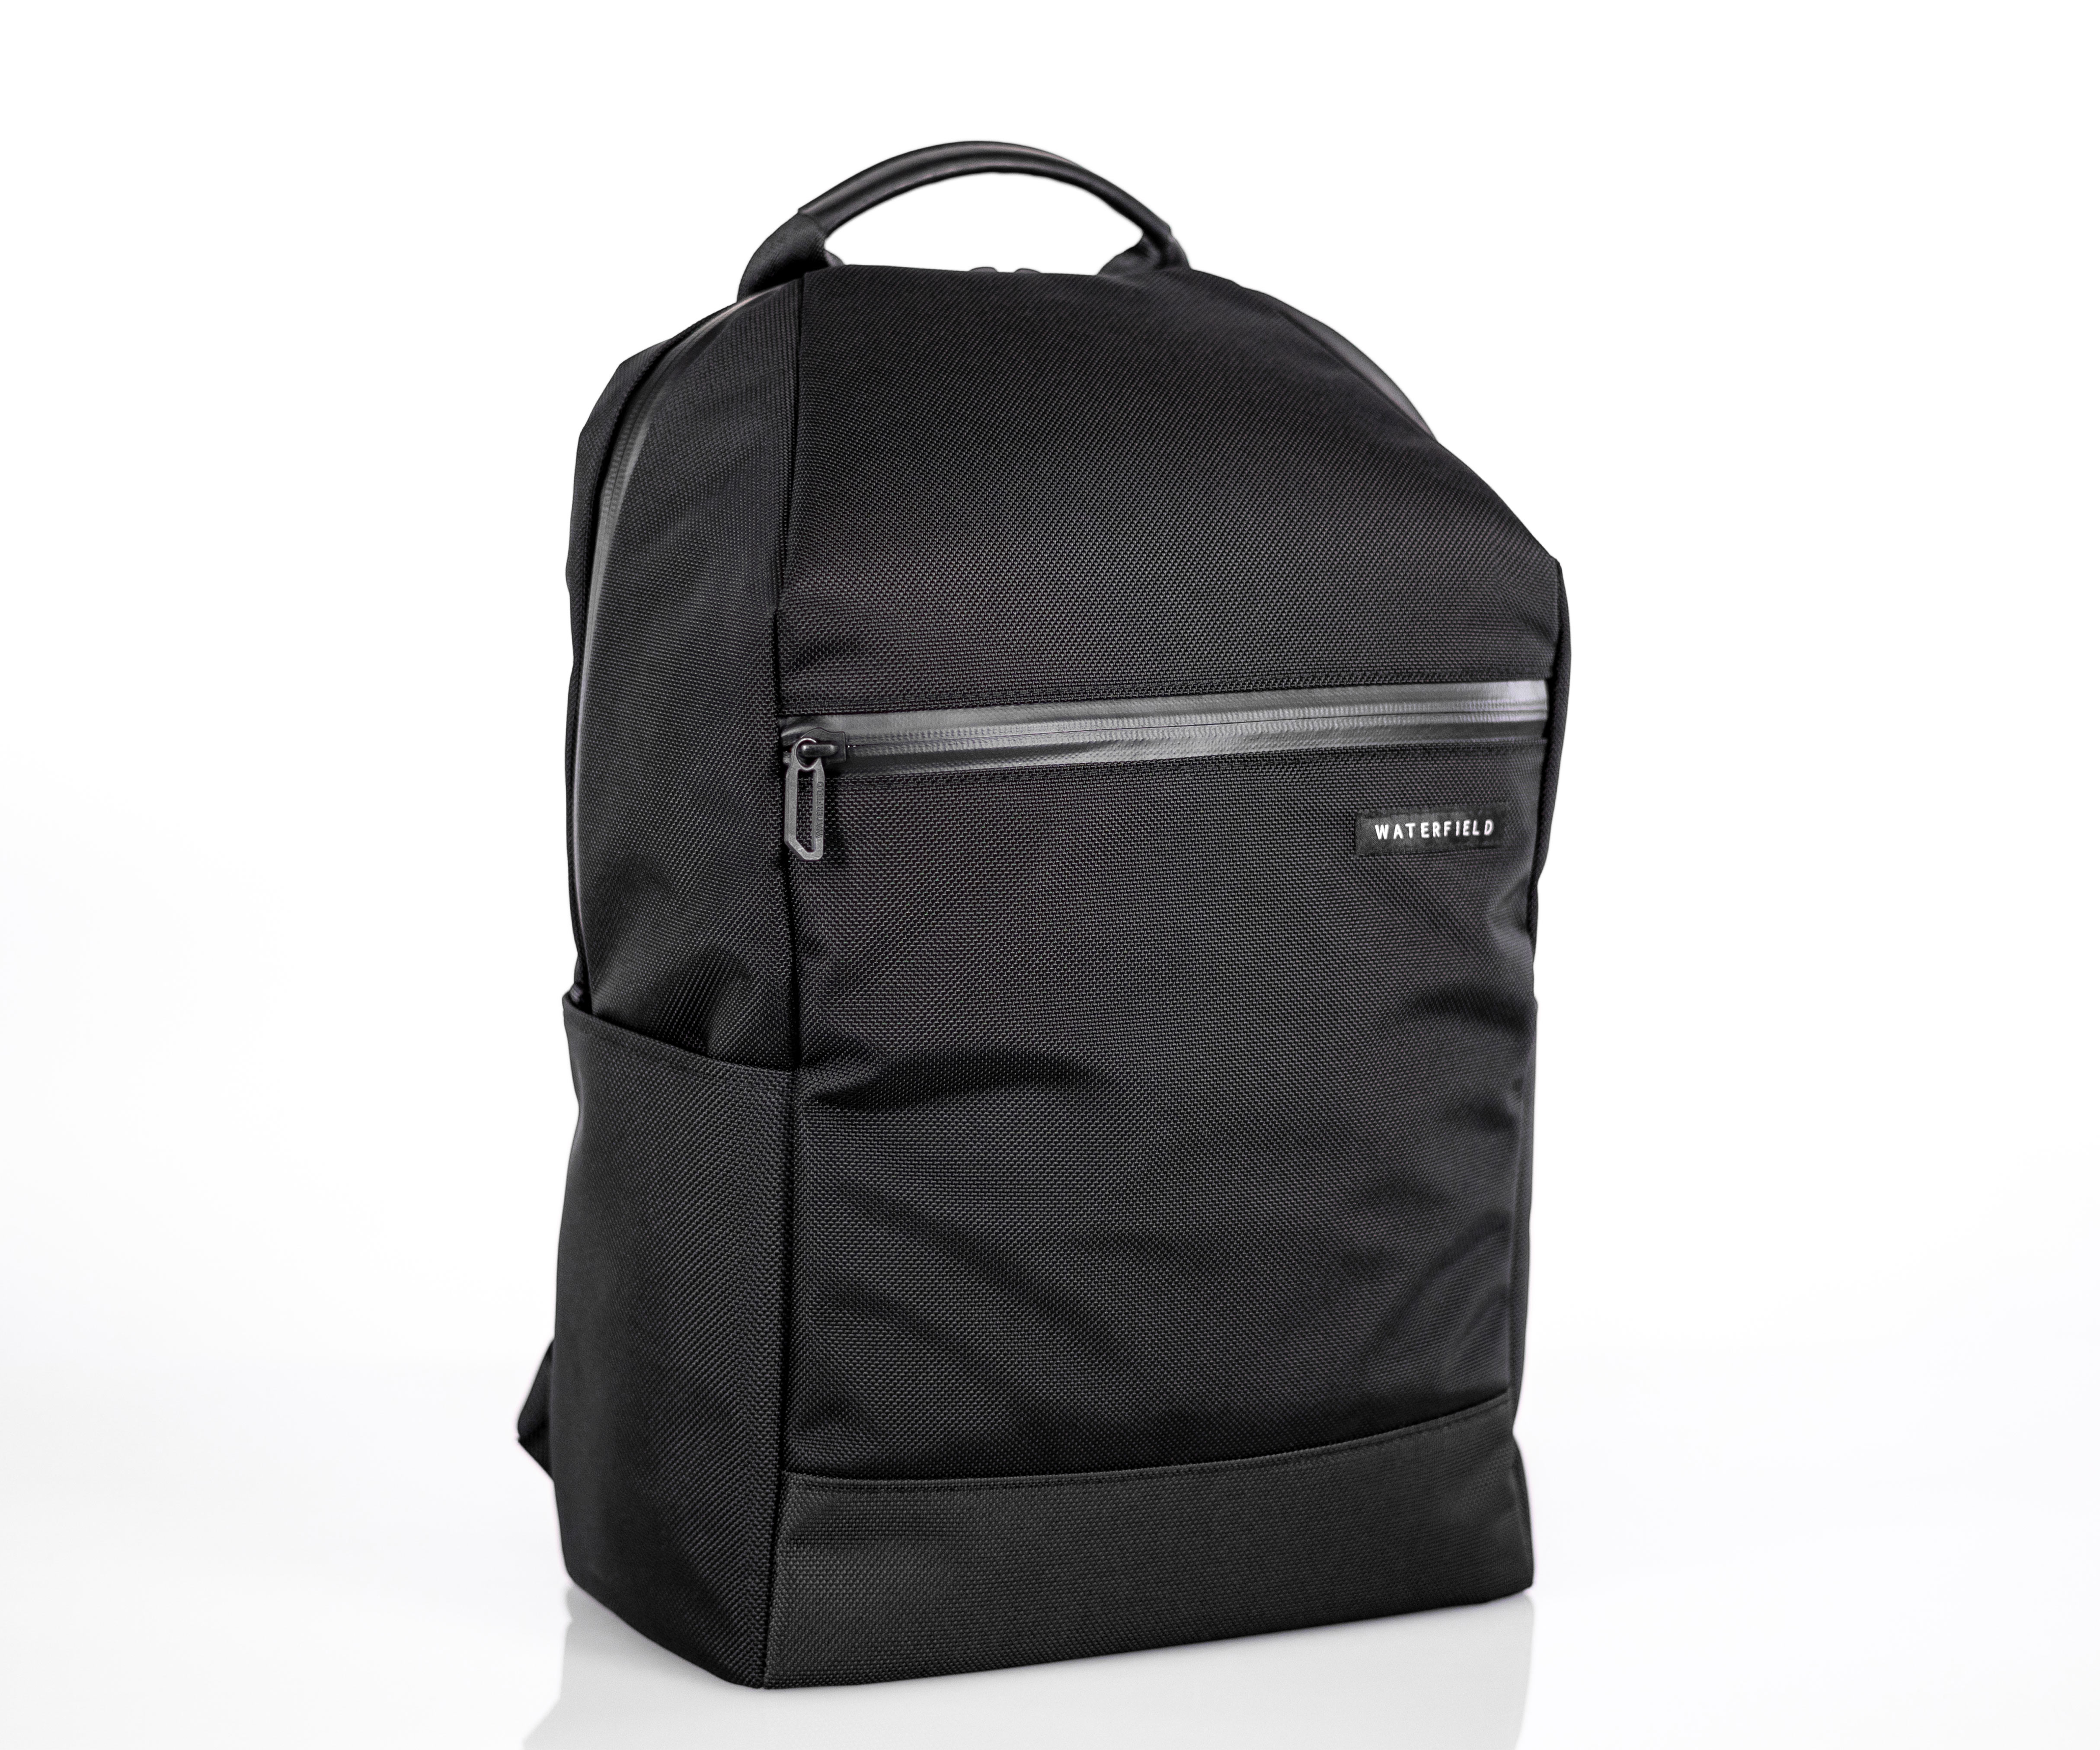 Essential Laptop Backpack in black